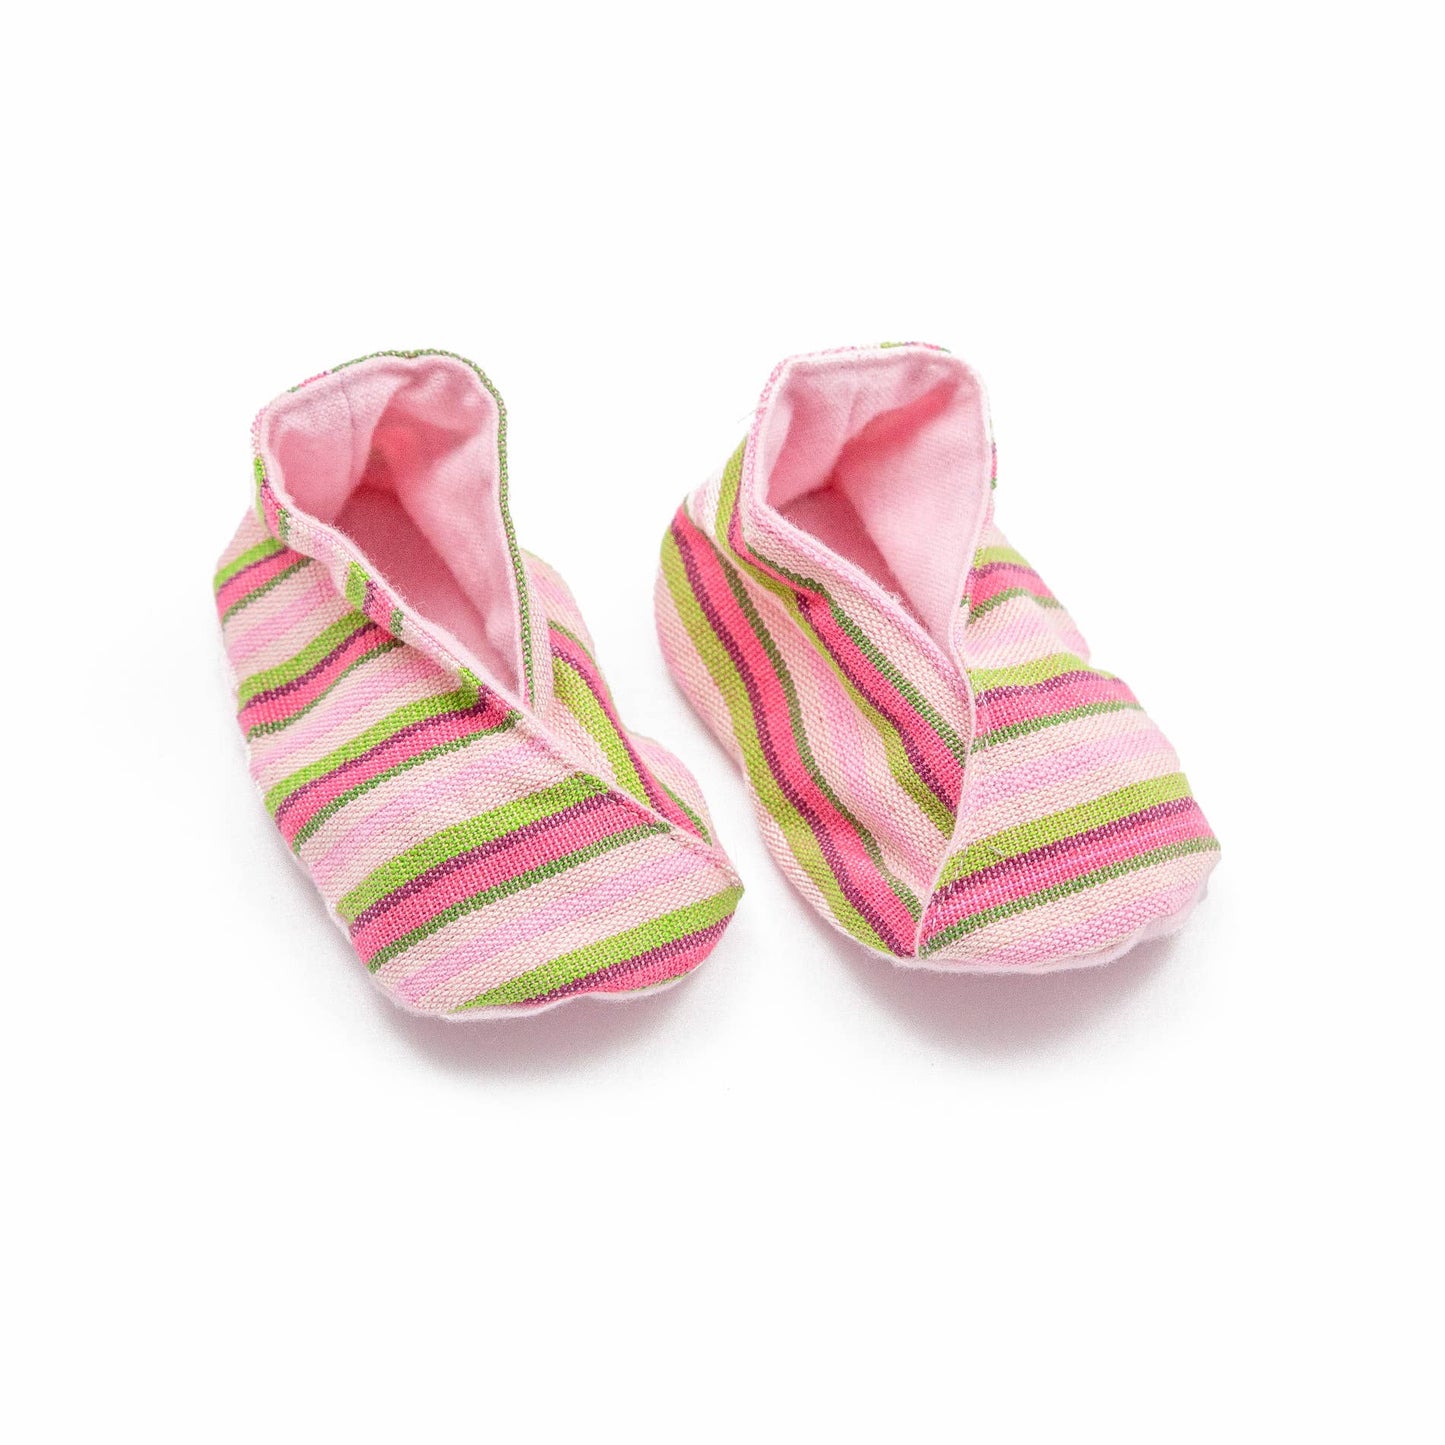 Handwoven Baby Booties - Pink